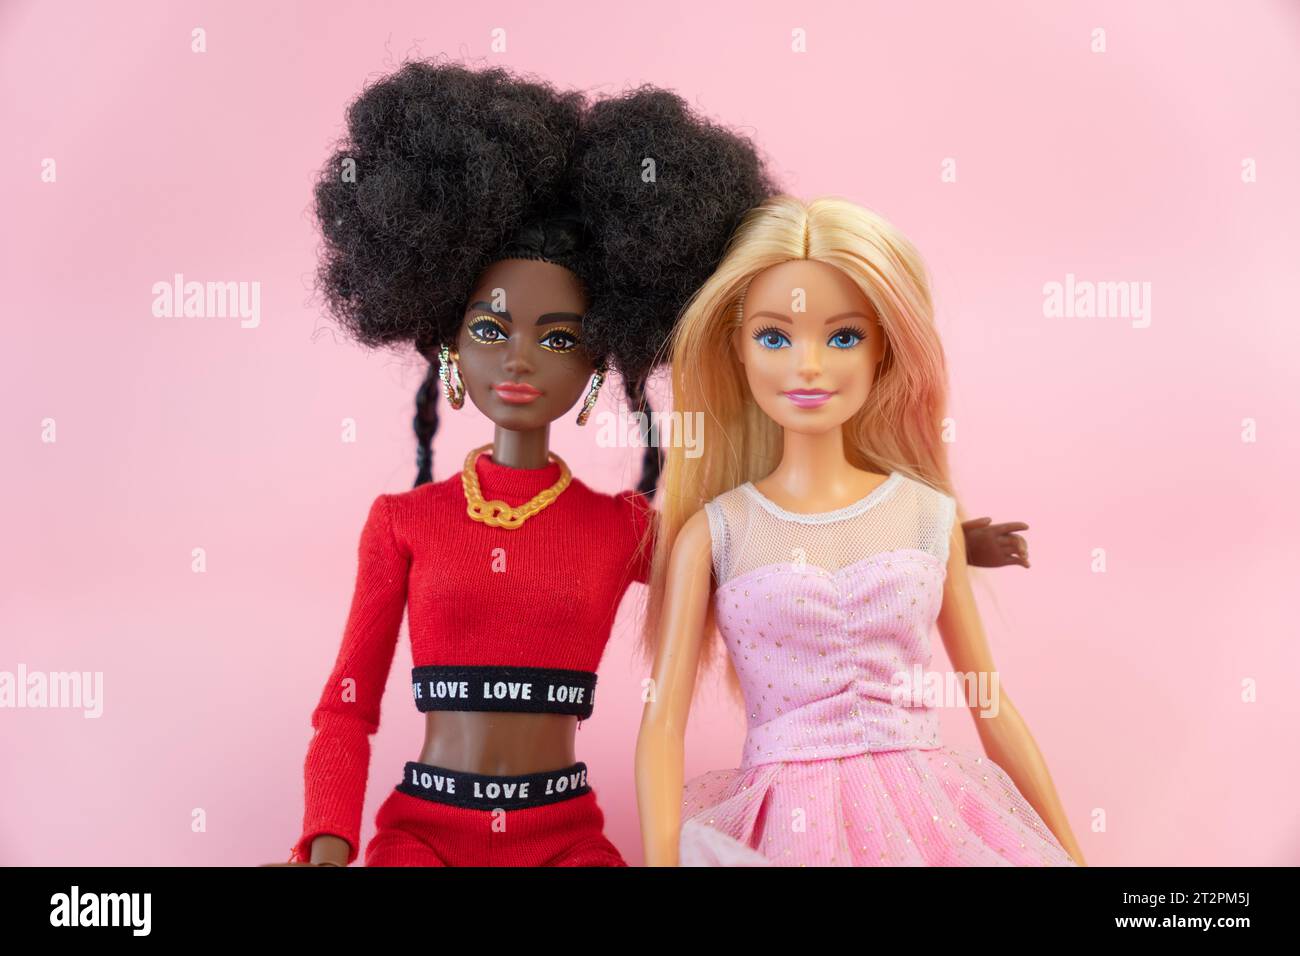 9 octobre 2023. Barnaul, Russie : deux poupées, une barbie blonde et son amie afro-américaine sur fond rose. Banque D'Images